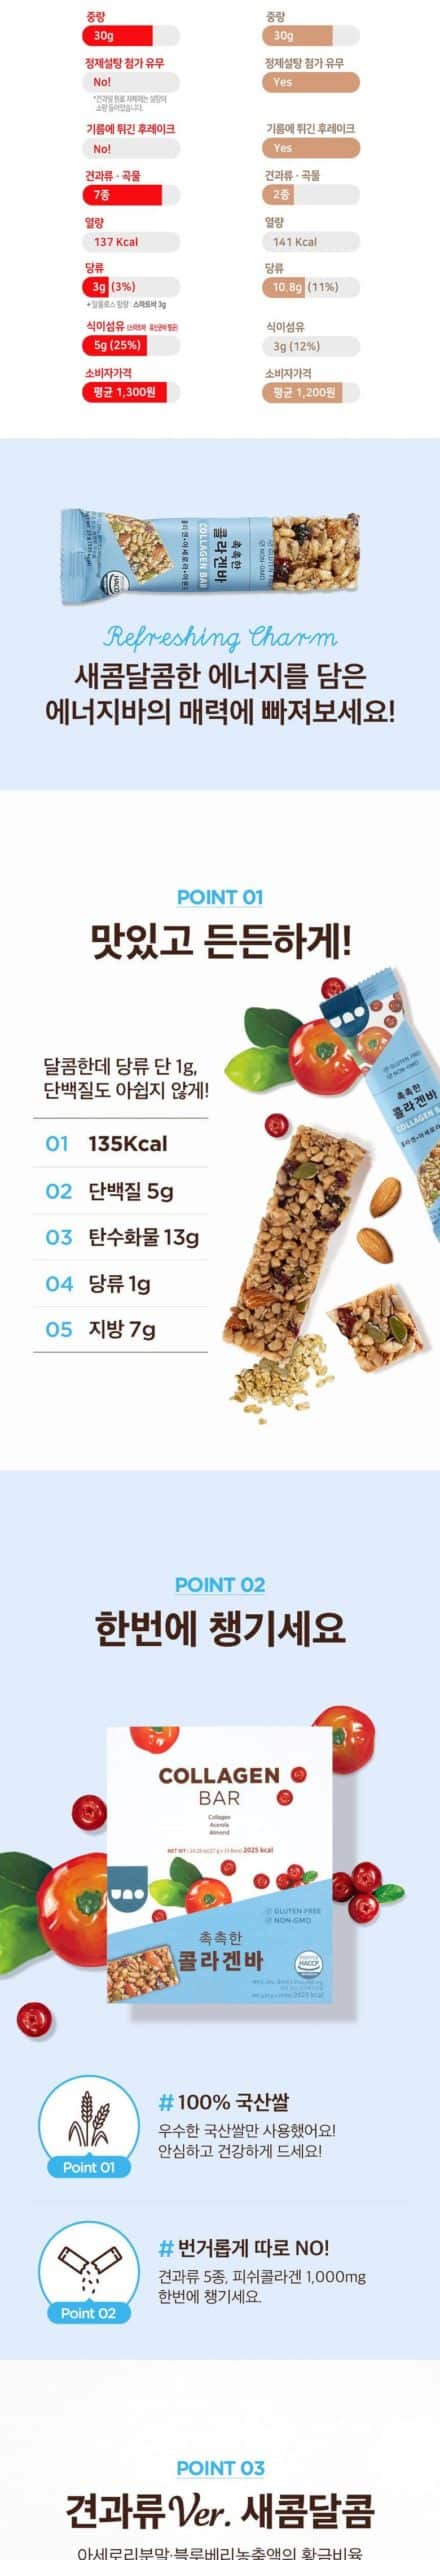 韓國食品-[콜라겐 우노바] 간편한 에너지바 27g